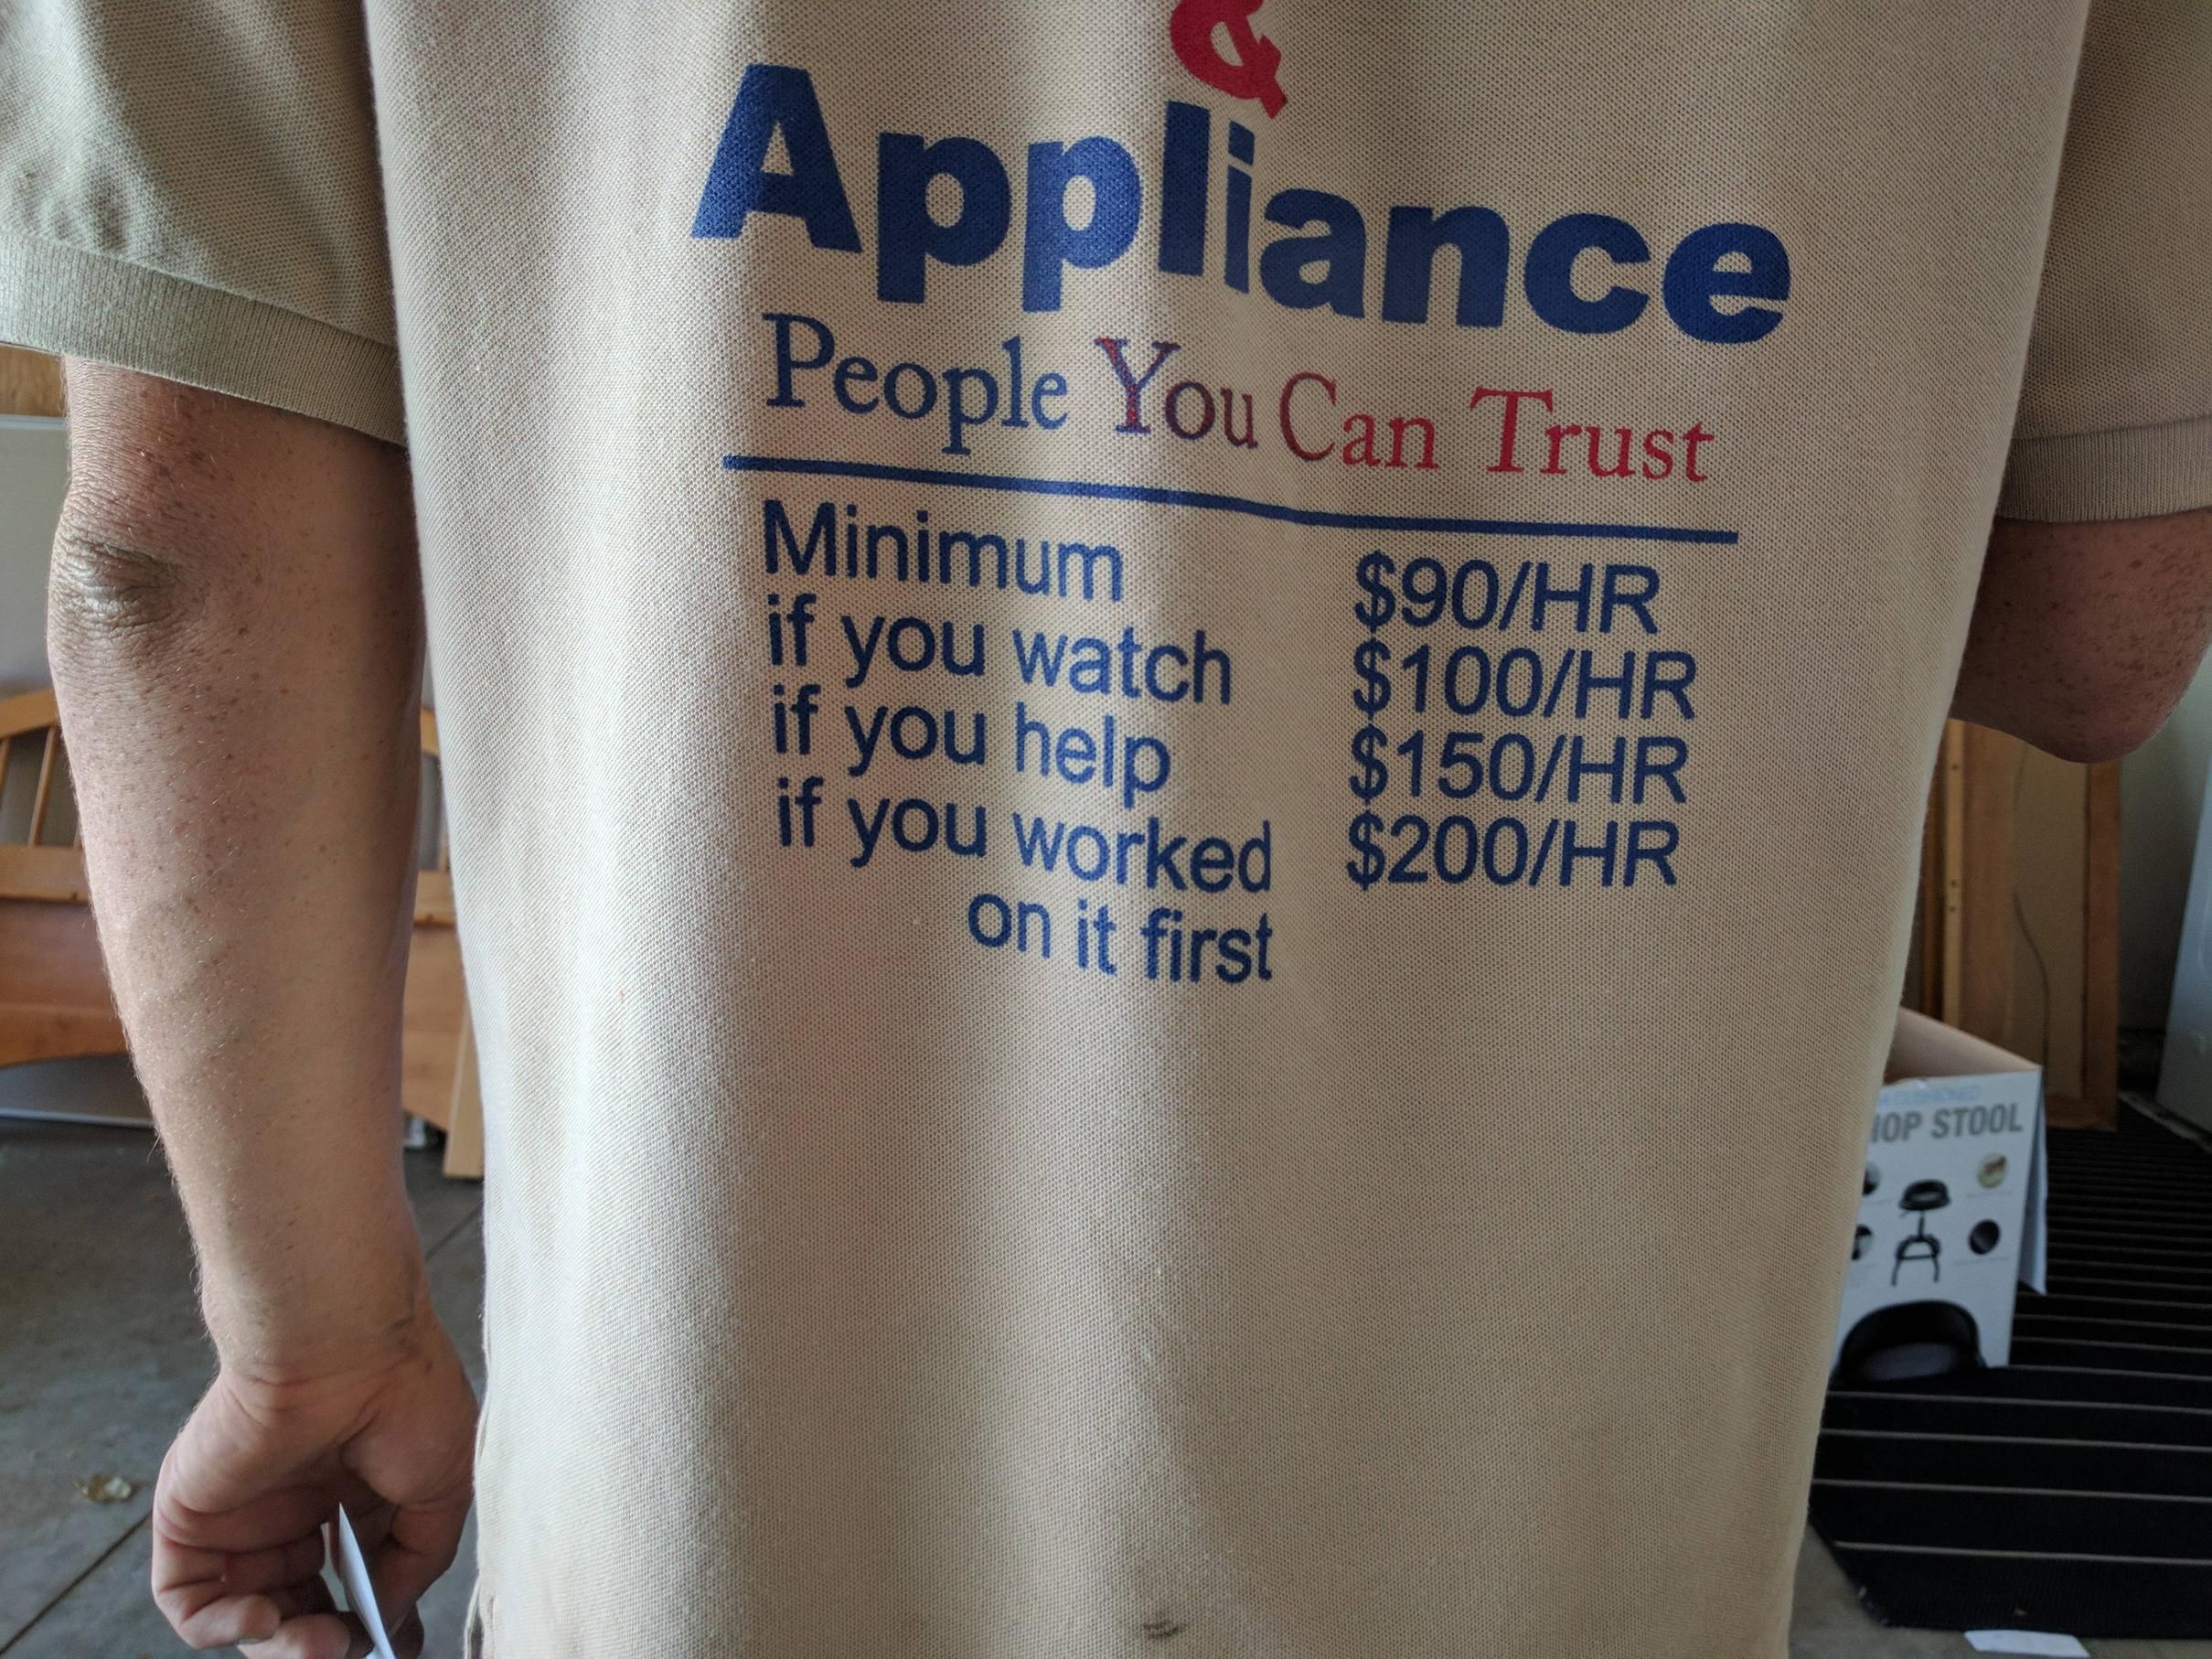 My repairman's pricing model